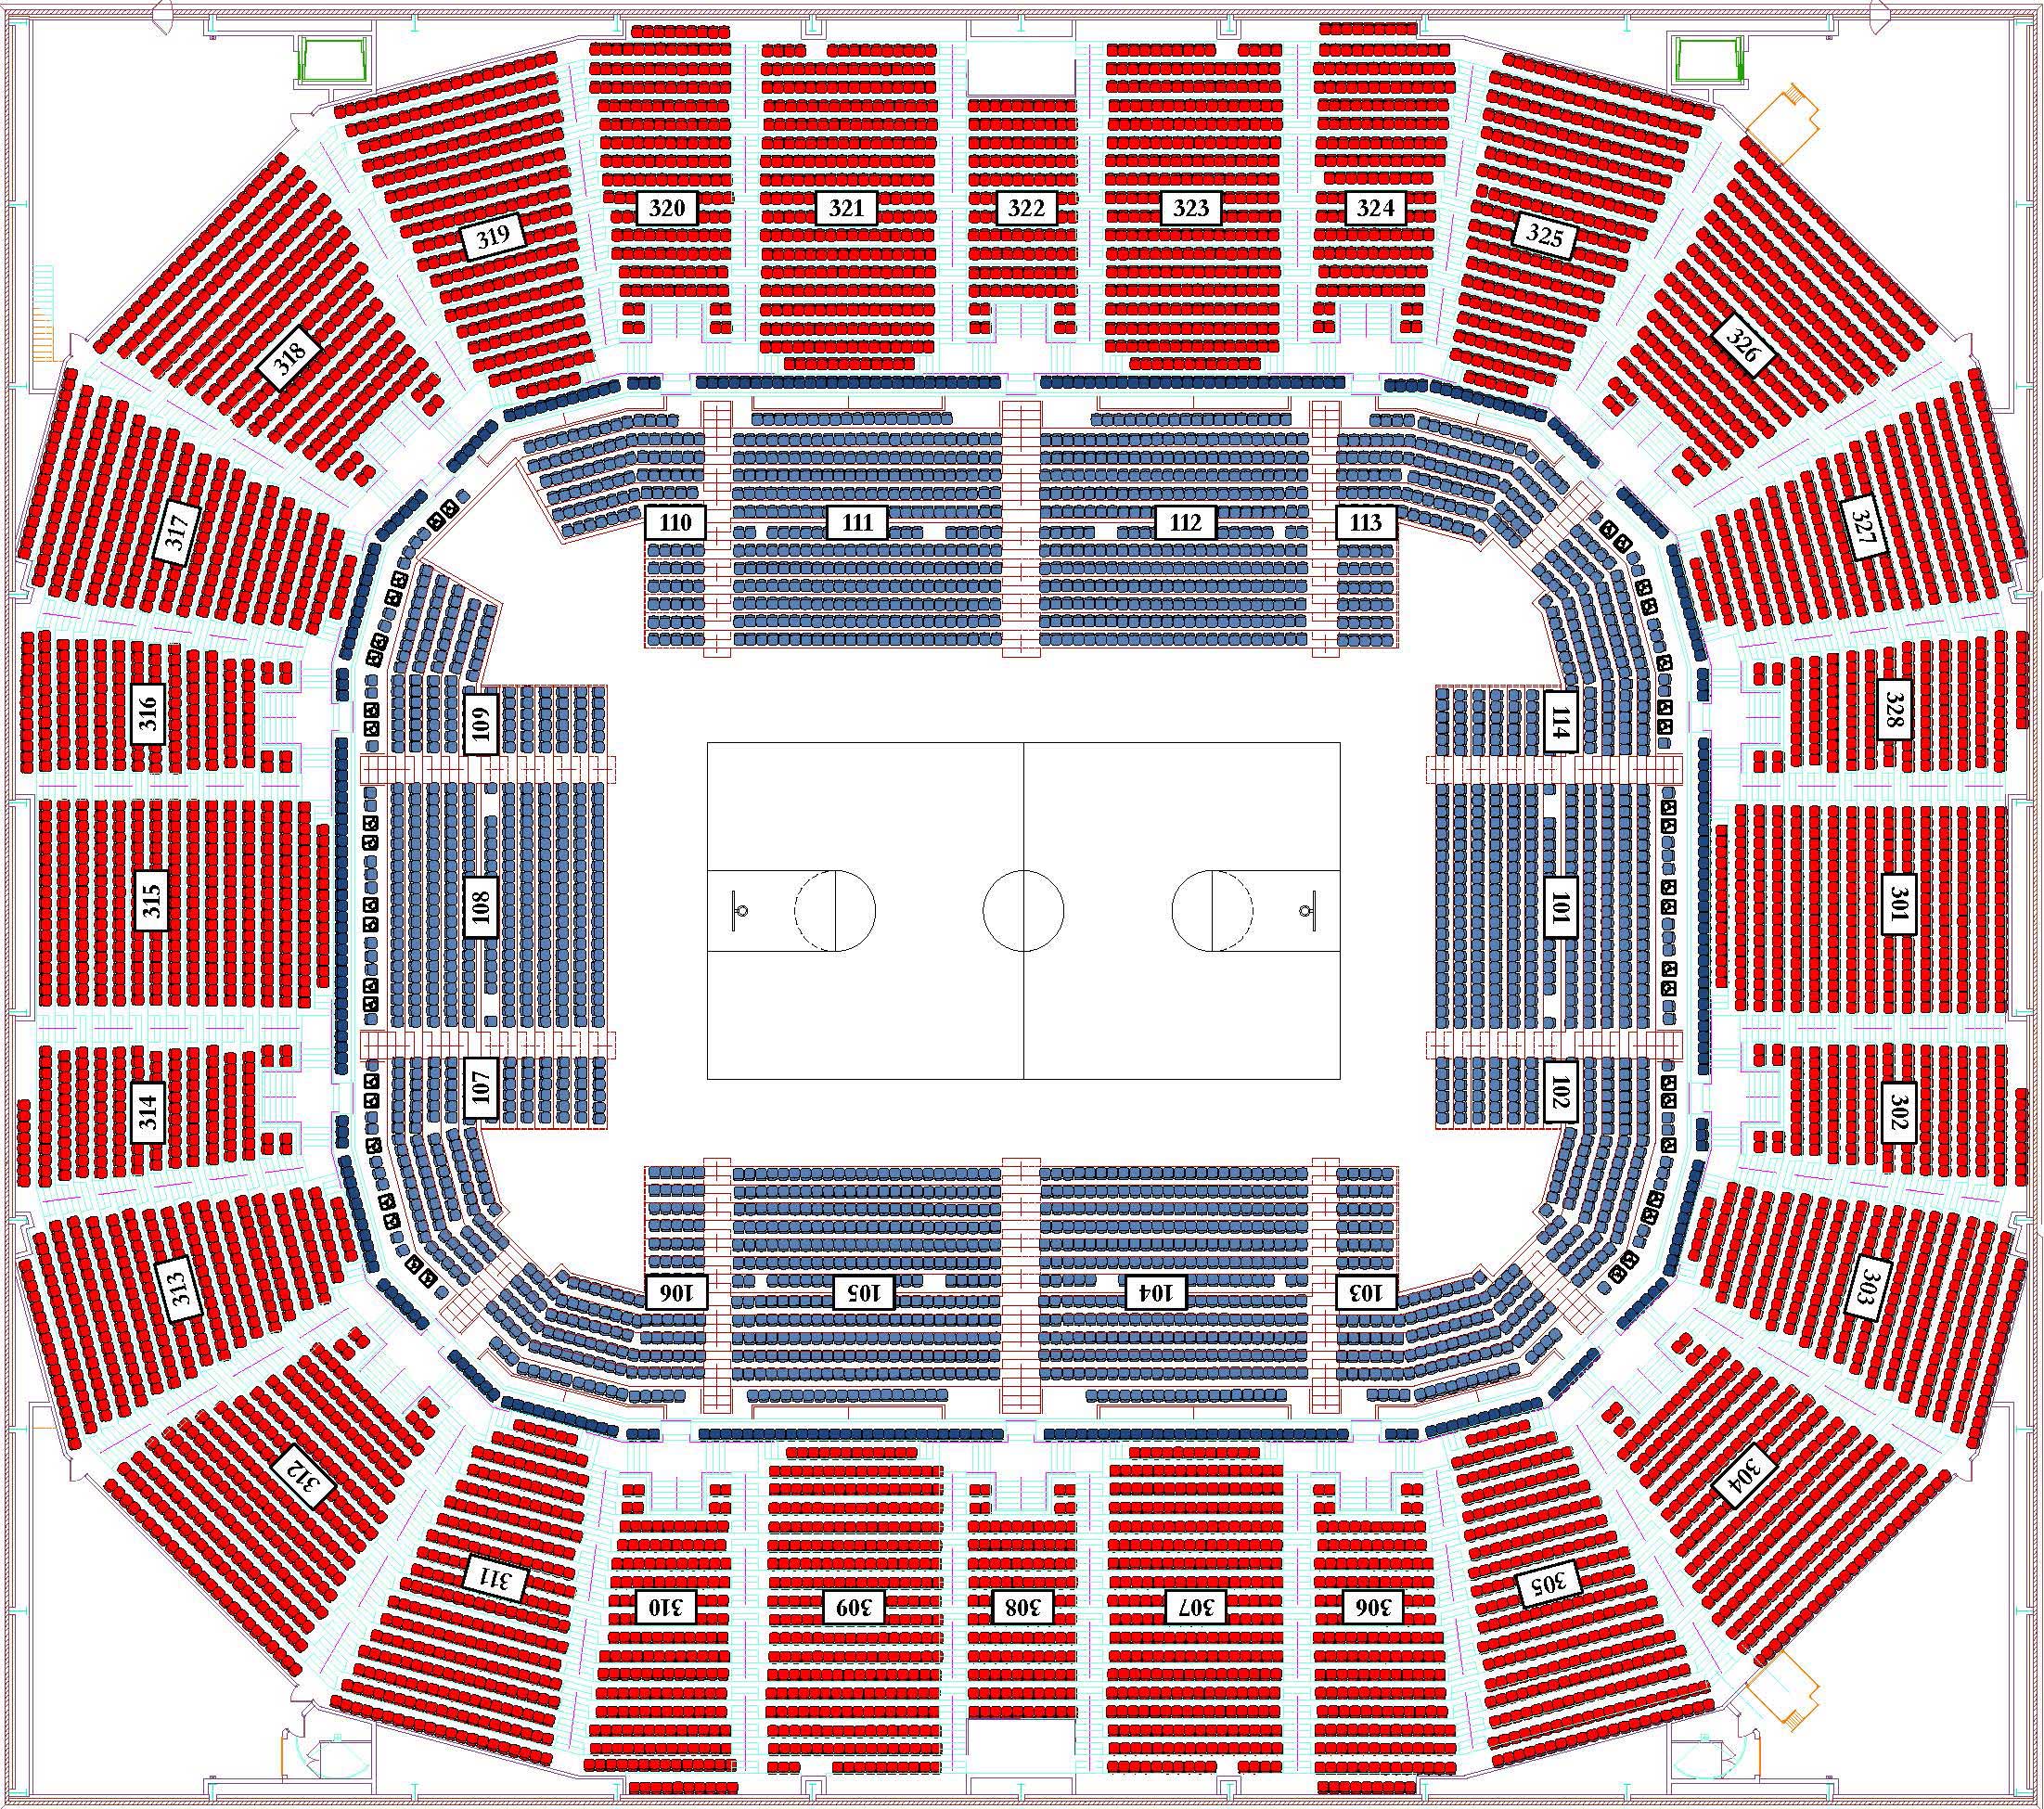 Mitchell Stadium Seating Chart